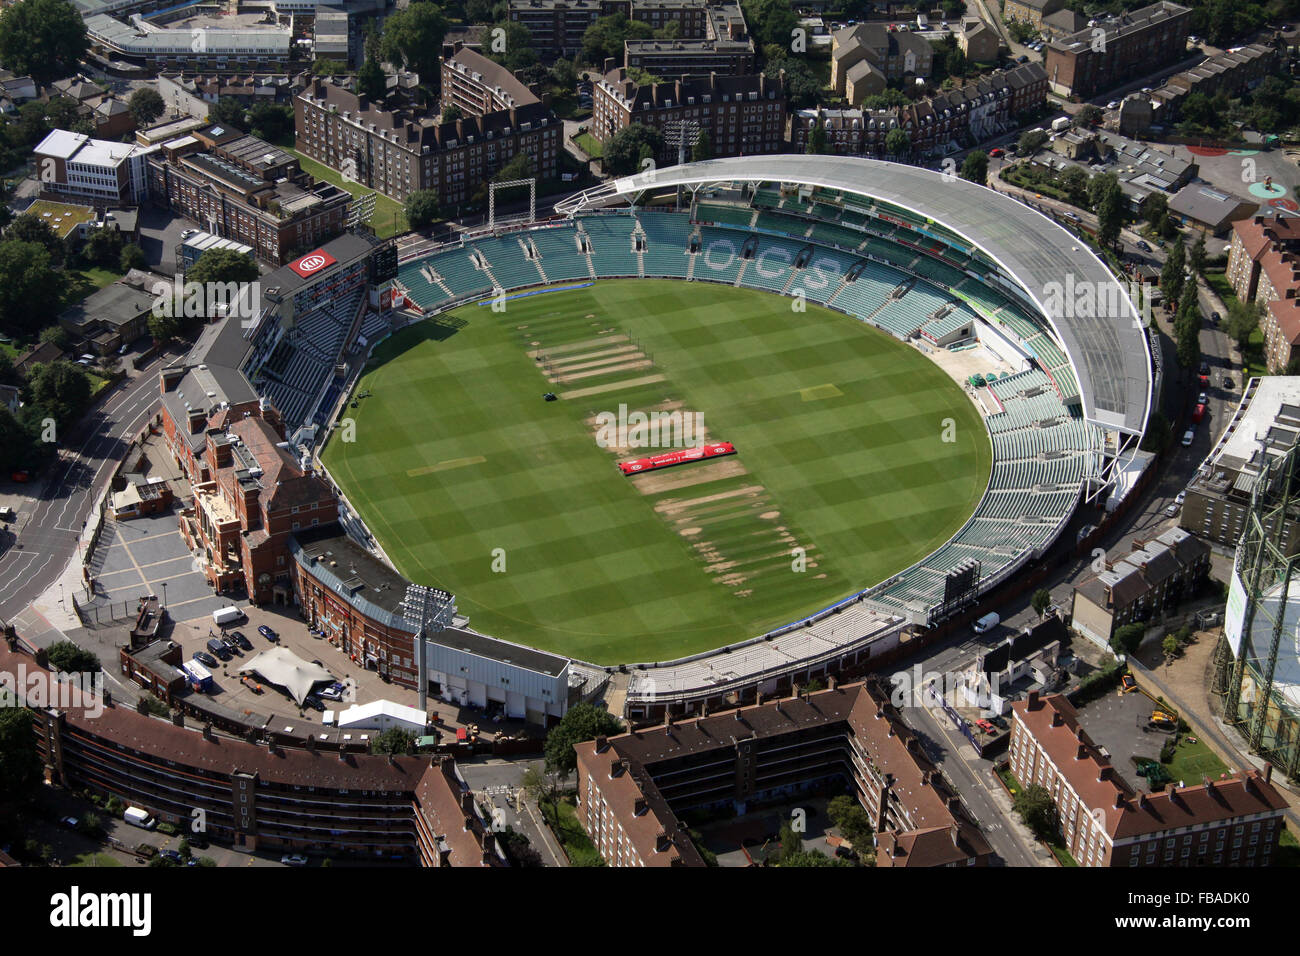 Vue aérienne de l'Kia Oval Cricket Ground à Londres, Royaume-Uni Banque D'Images